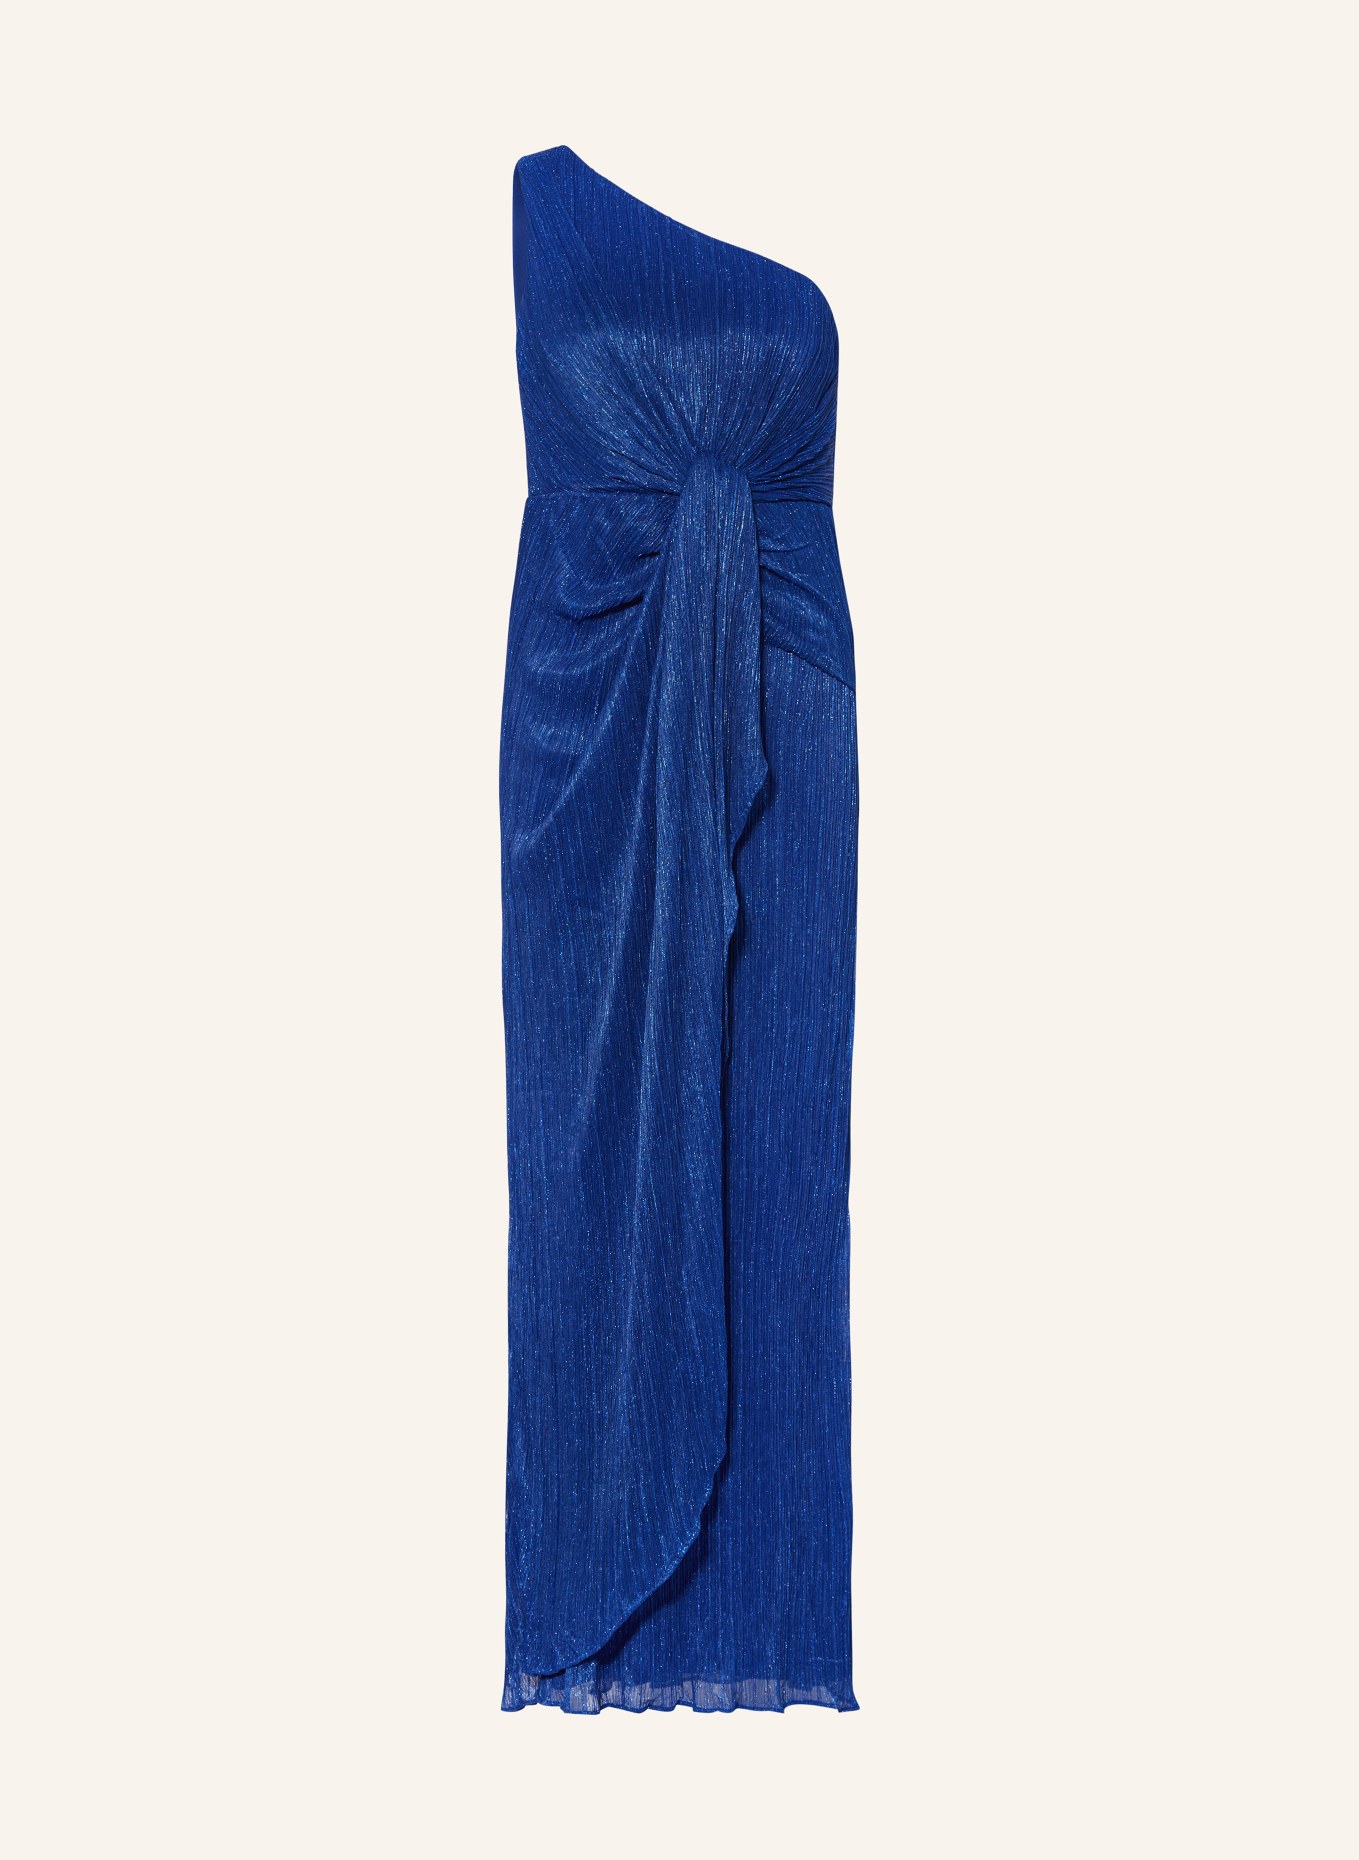 ADRIANNA PAPELL One-Shoulder-Kleid mit Glitzergarn, Farbe: BLAU (Bild 1)